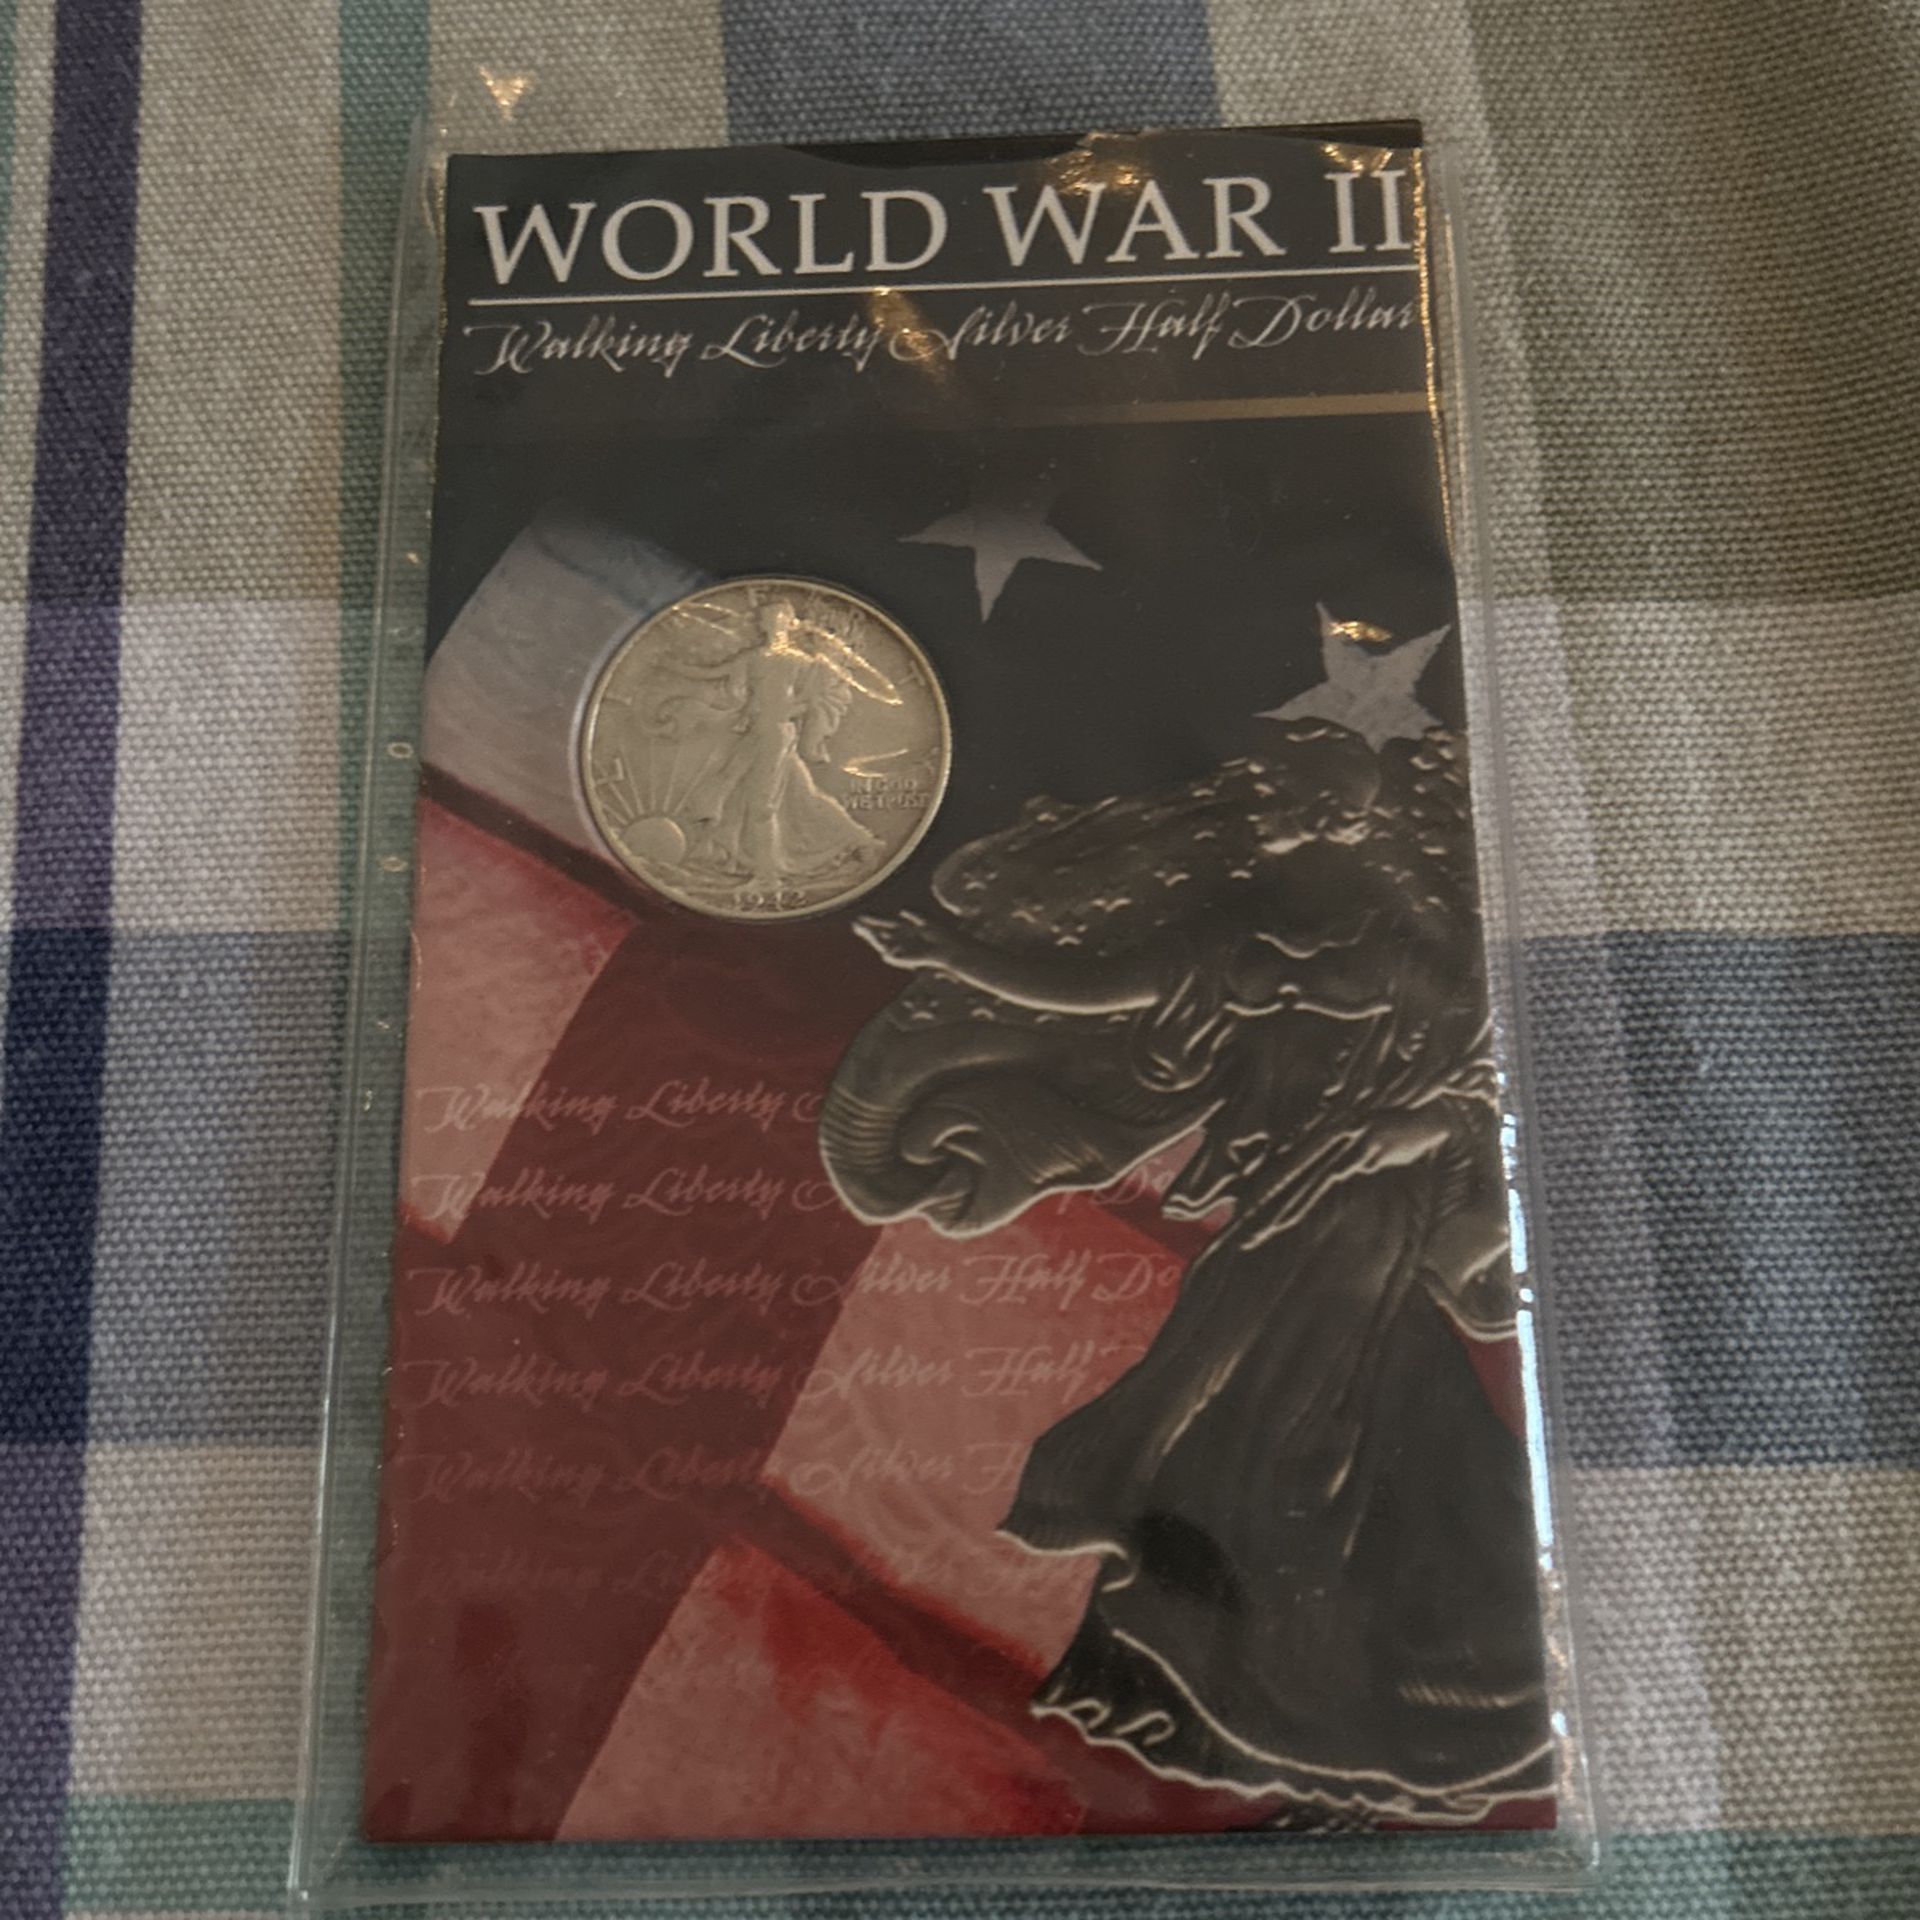 World War 2